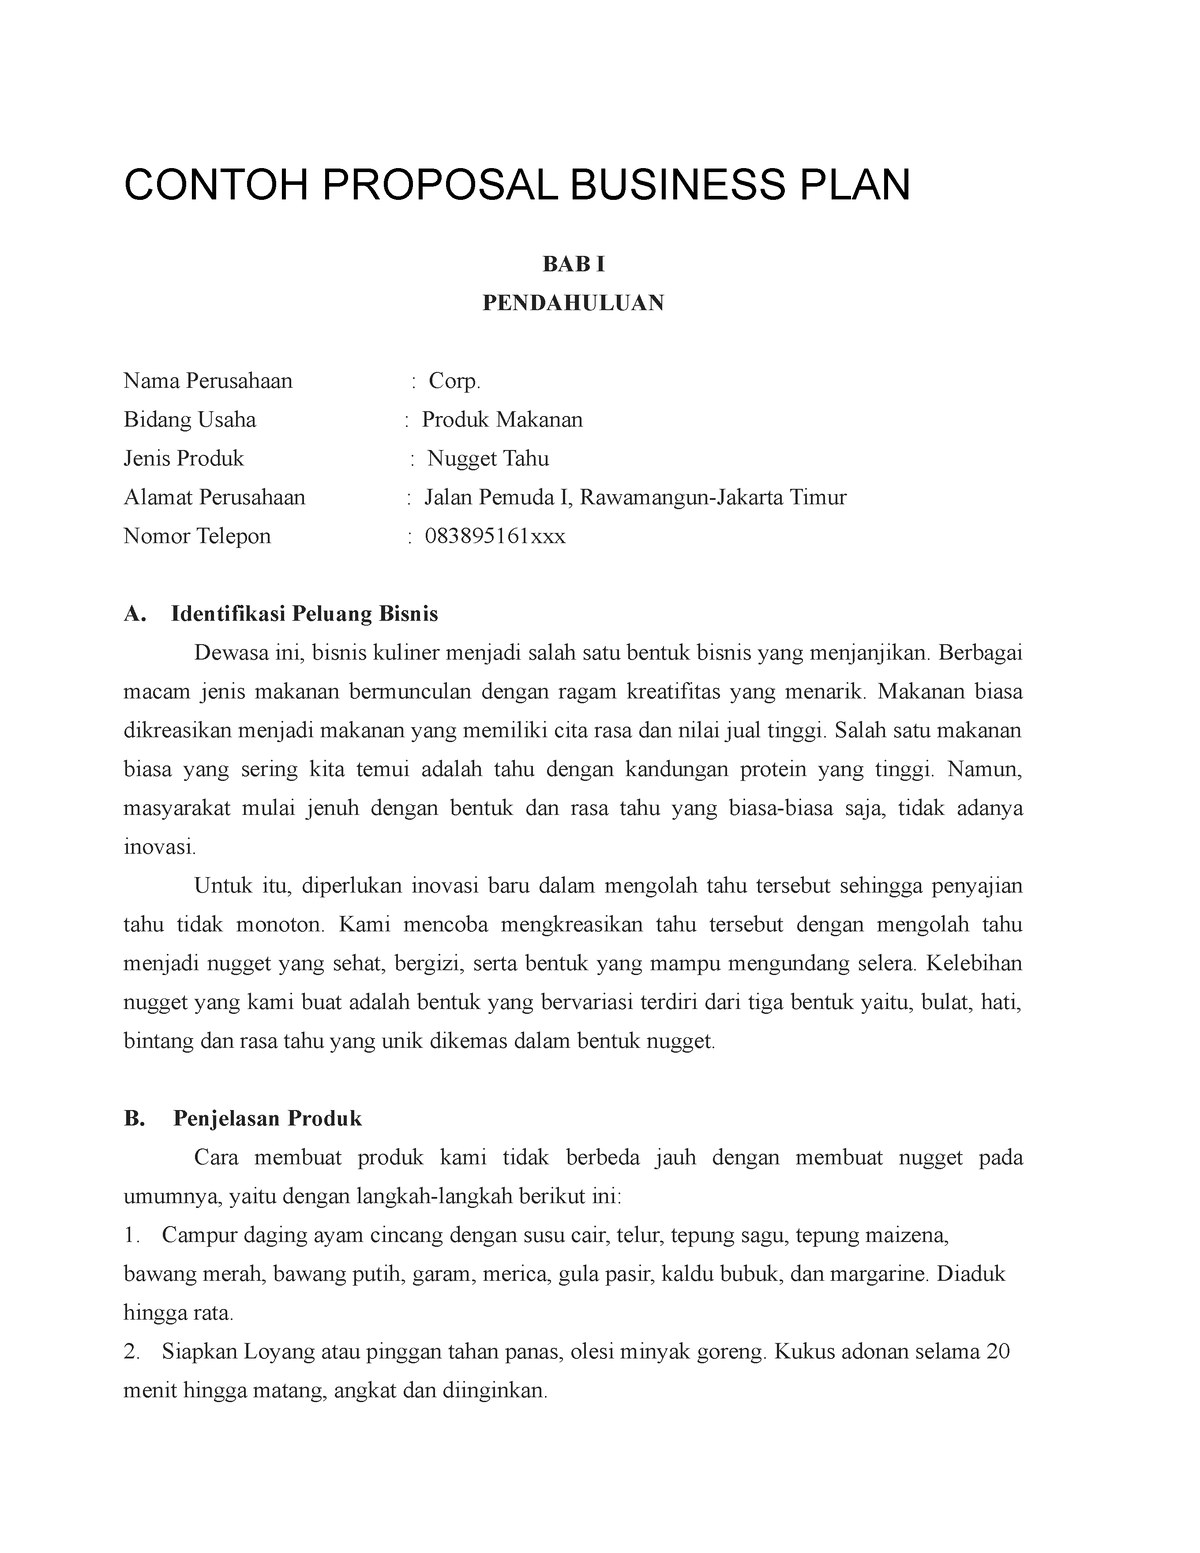 contoh business plan produk